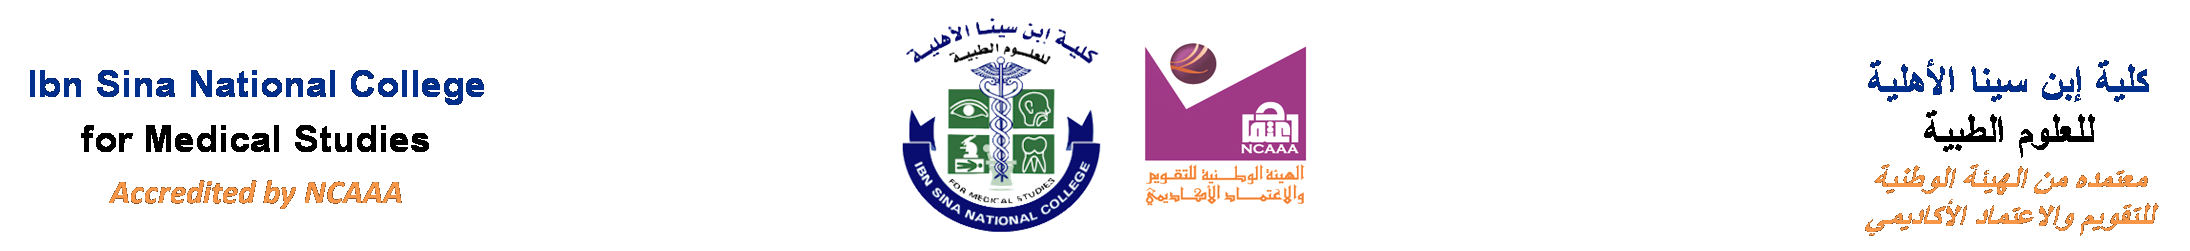 دولة العربية السعودية: روابط كلية ابن سينا الأهليه للعلوم الطبيه